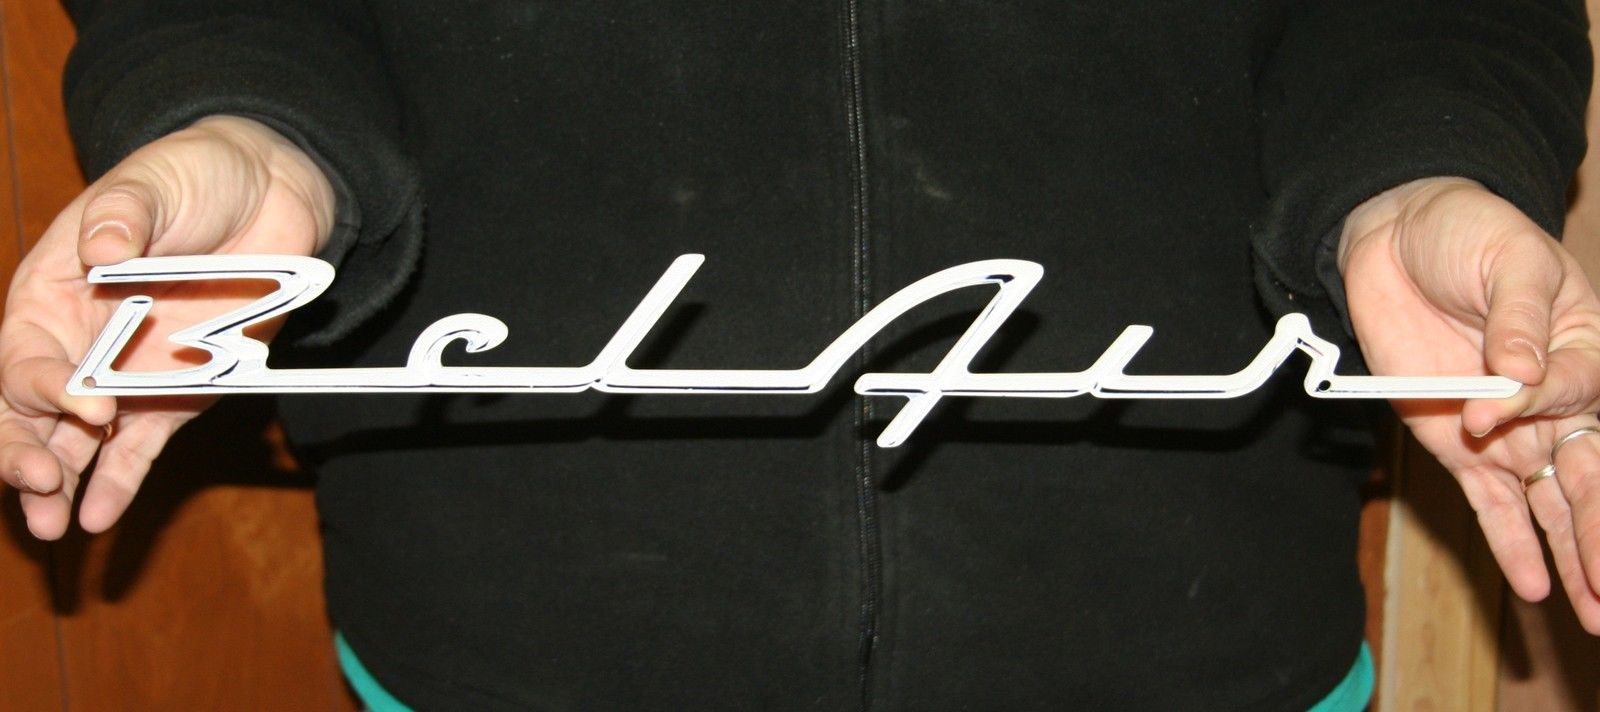 Bel Air 1955-56 Script Logo - Speedcult Officially Licensed